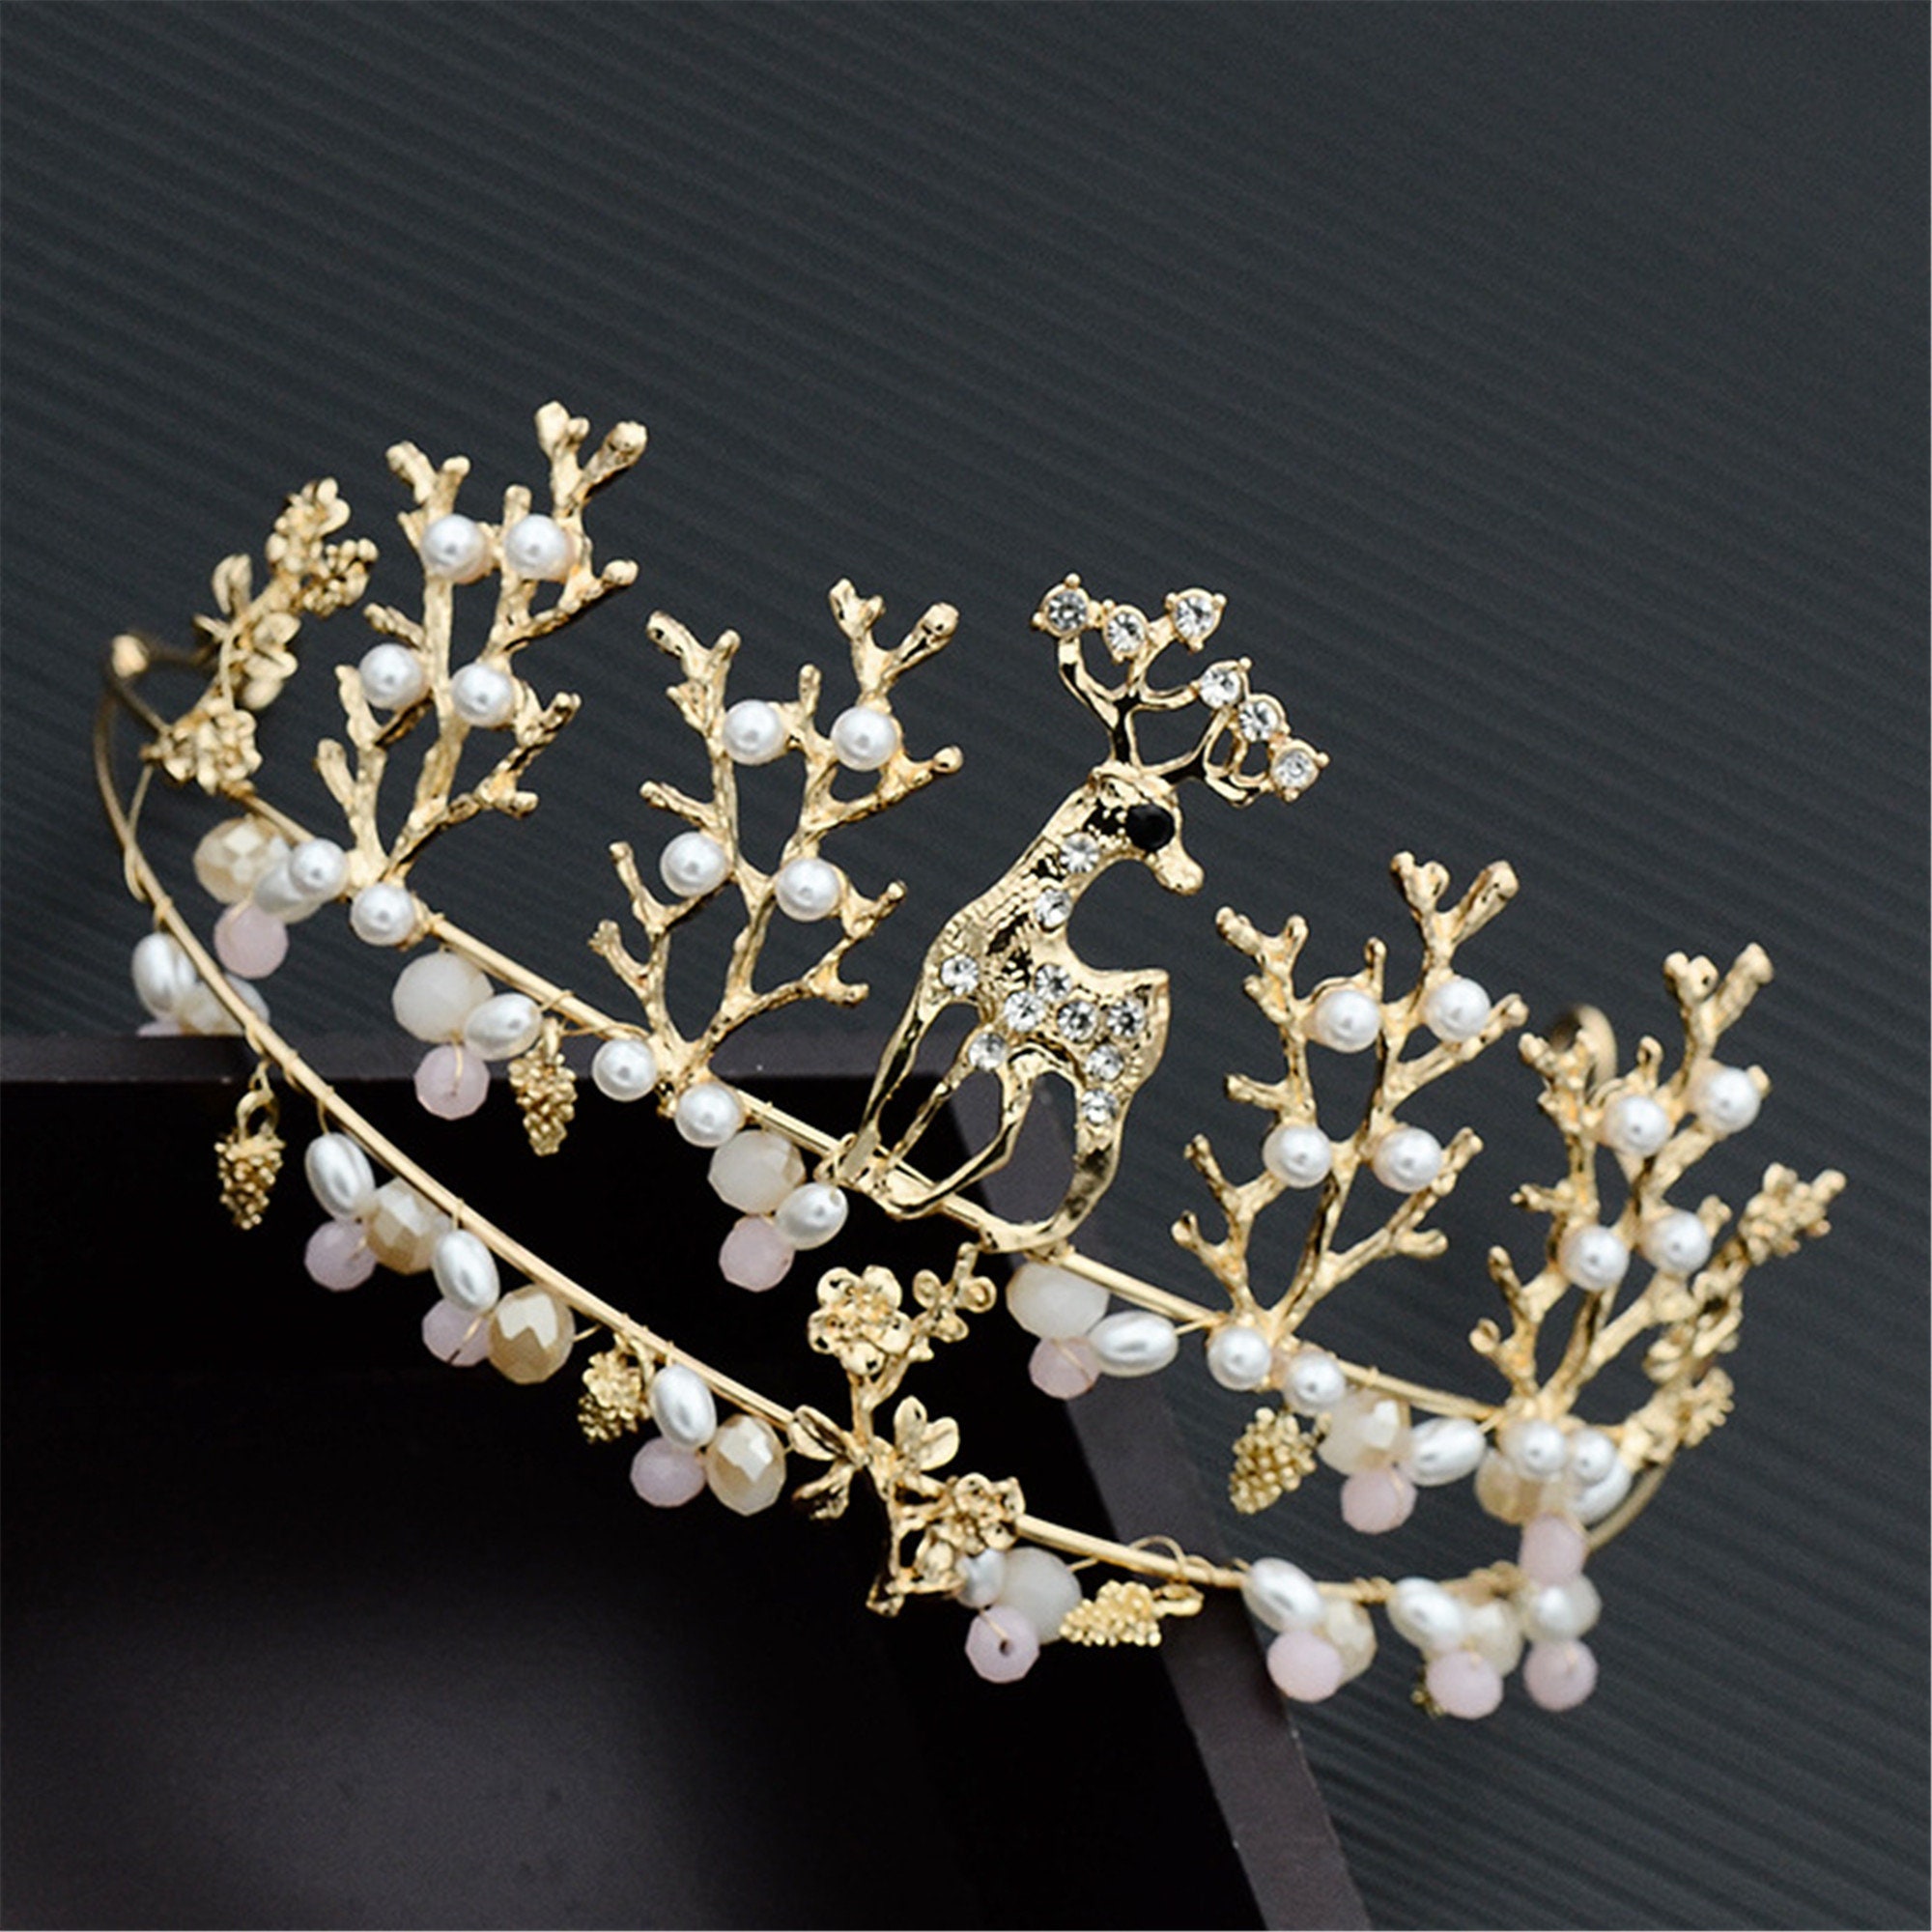 Golden Deer Wedding Crown Bridal Crown Headband Hair | Etsy